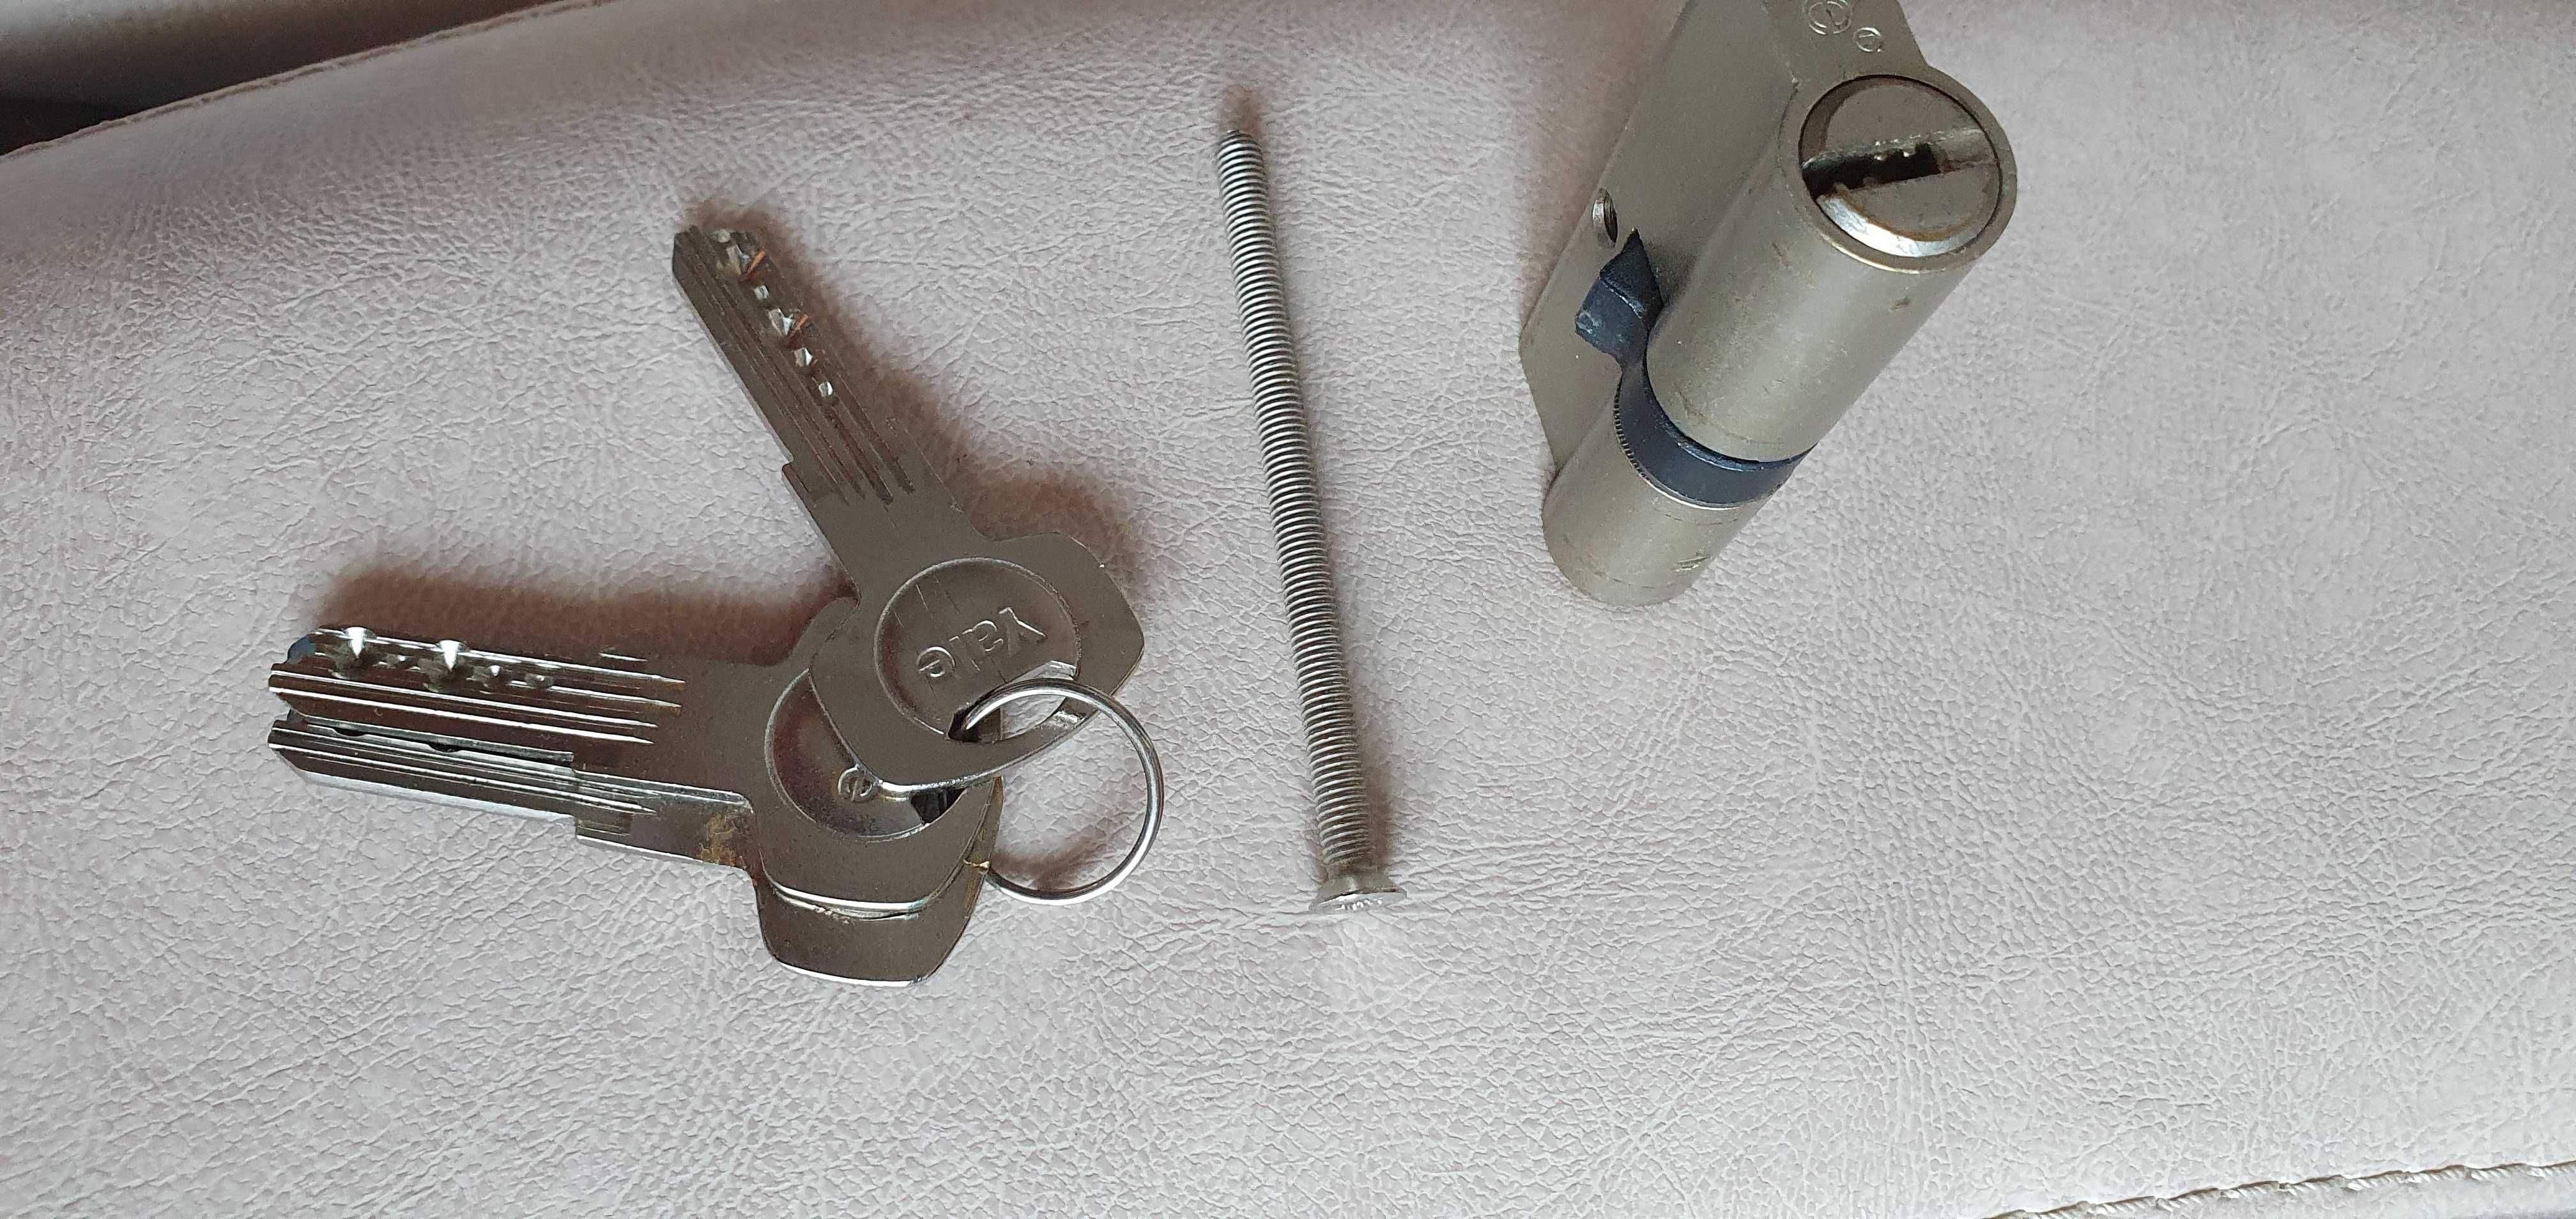 Butuc cilindru pentru broască ușă, lungime 68 mm, marca -YALE -3 chei